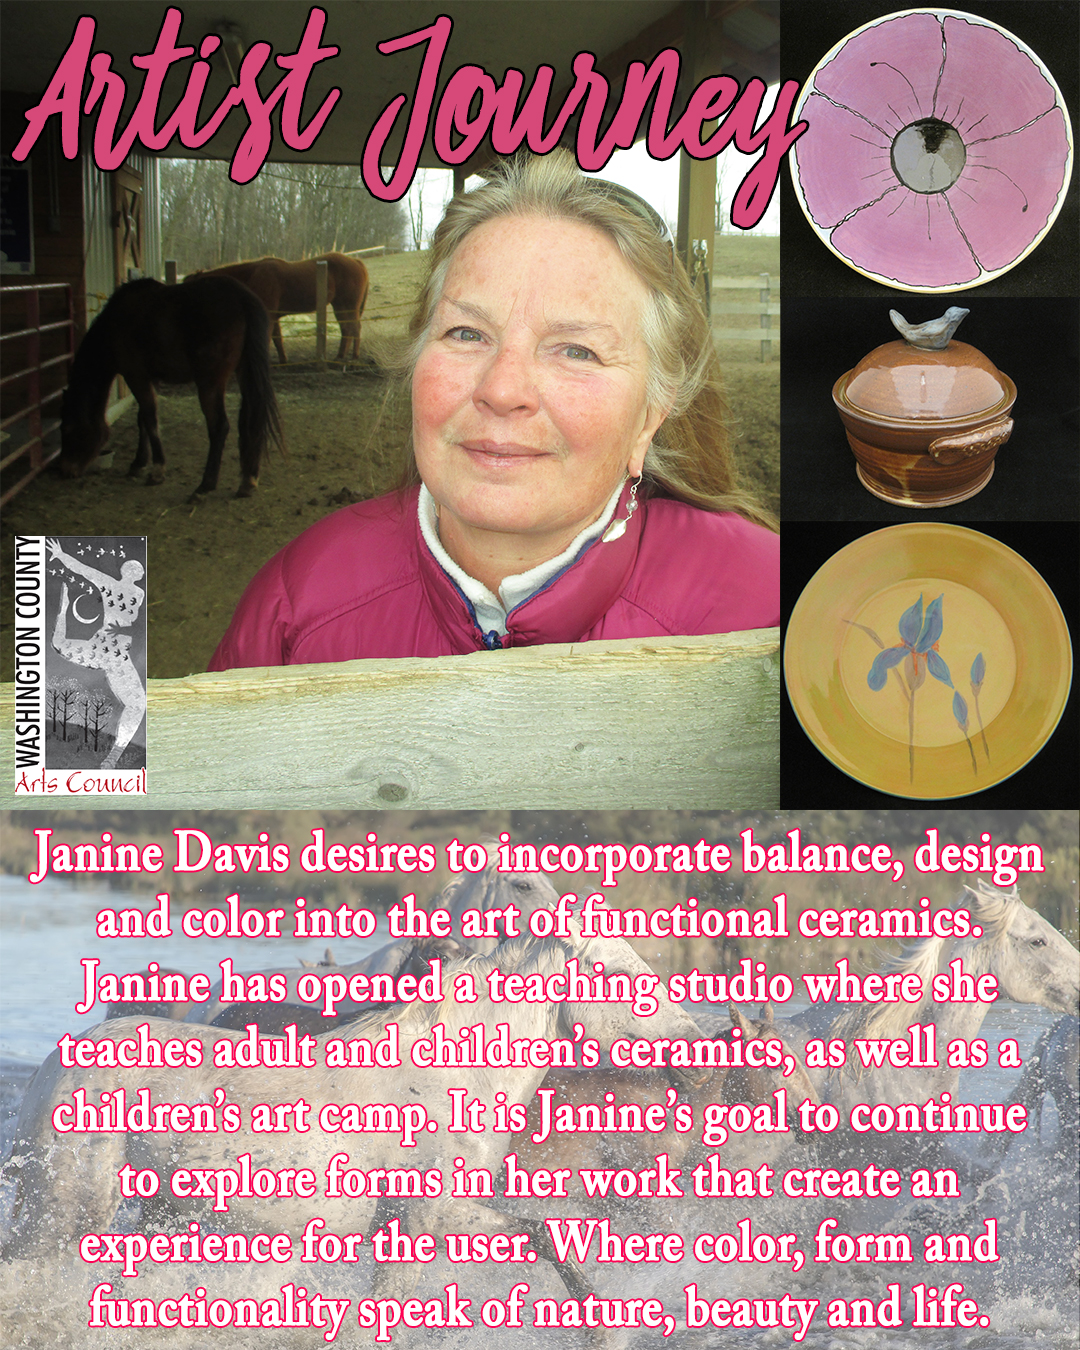 Janine Davis